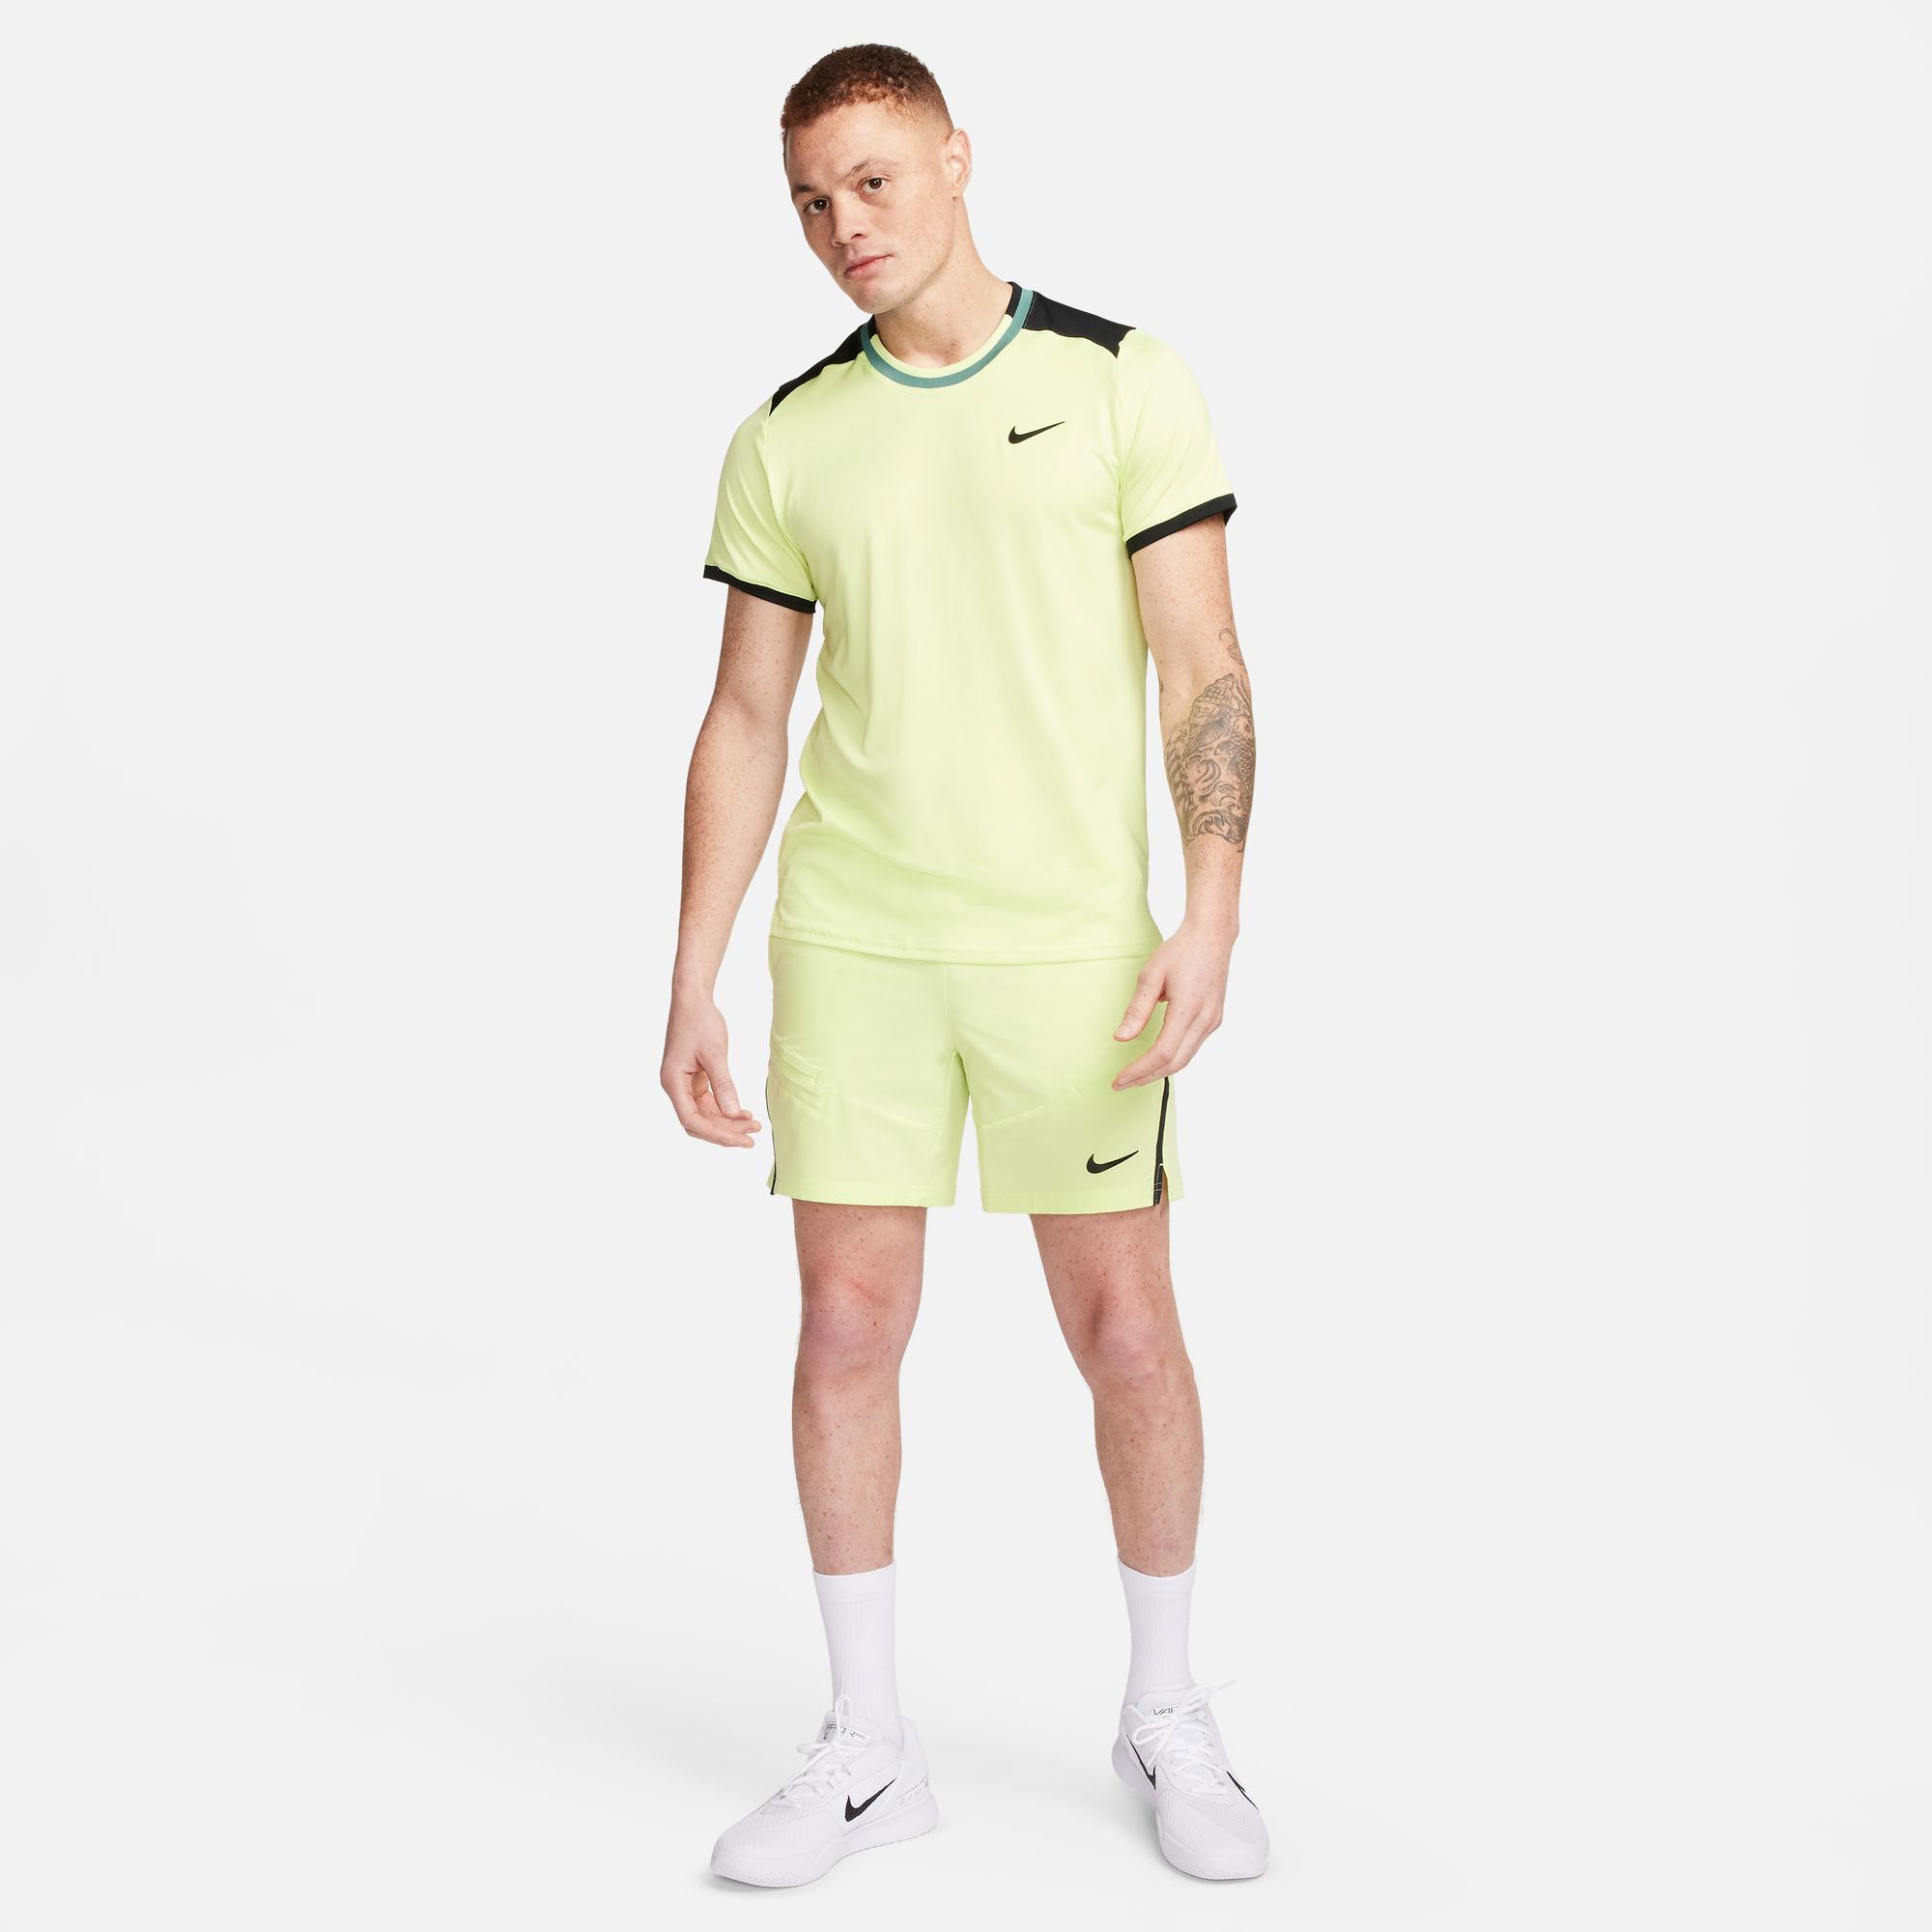 NikeCourt Advantage Men's Dri-FIT Tennis Shirt - Yellow (5)